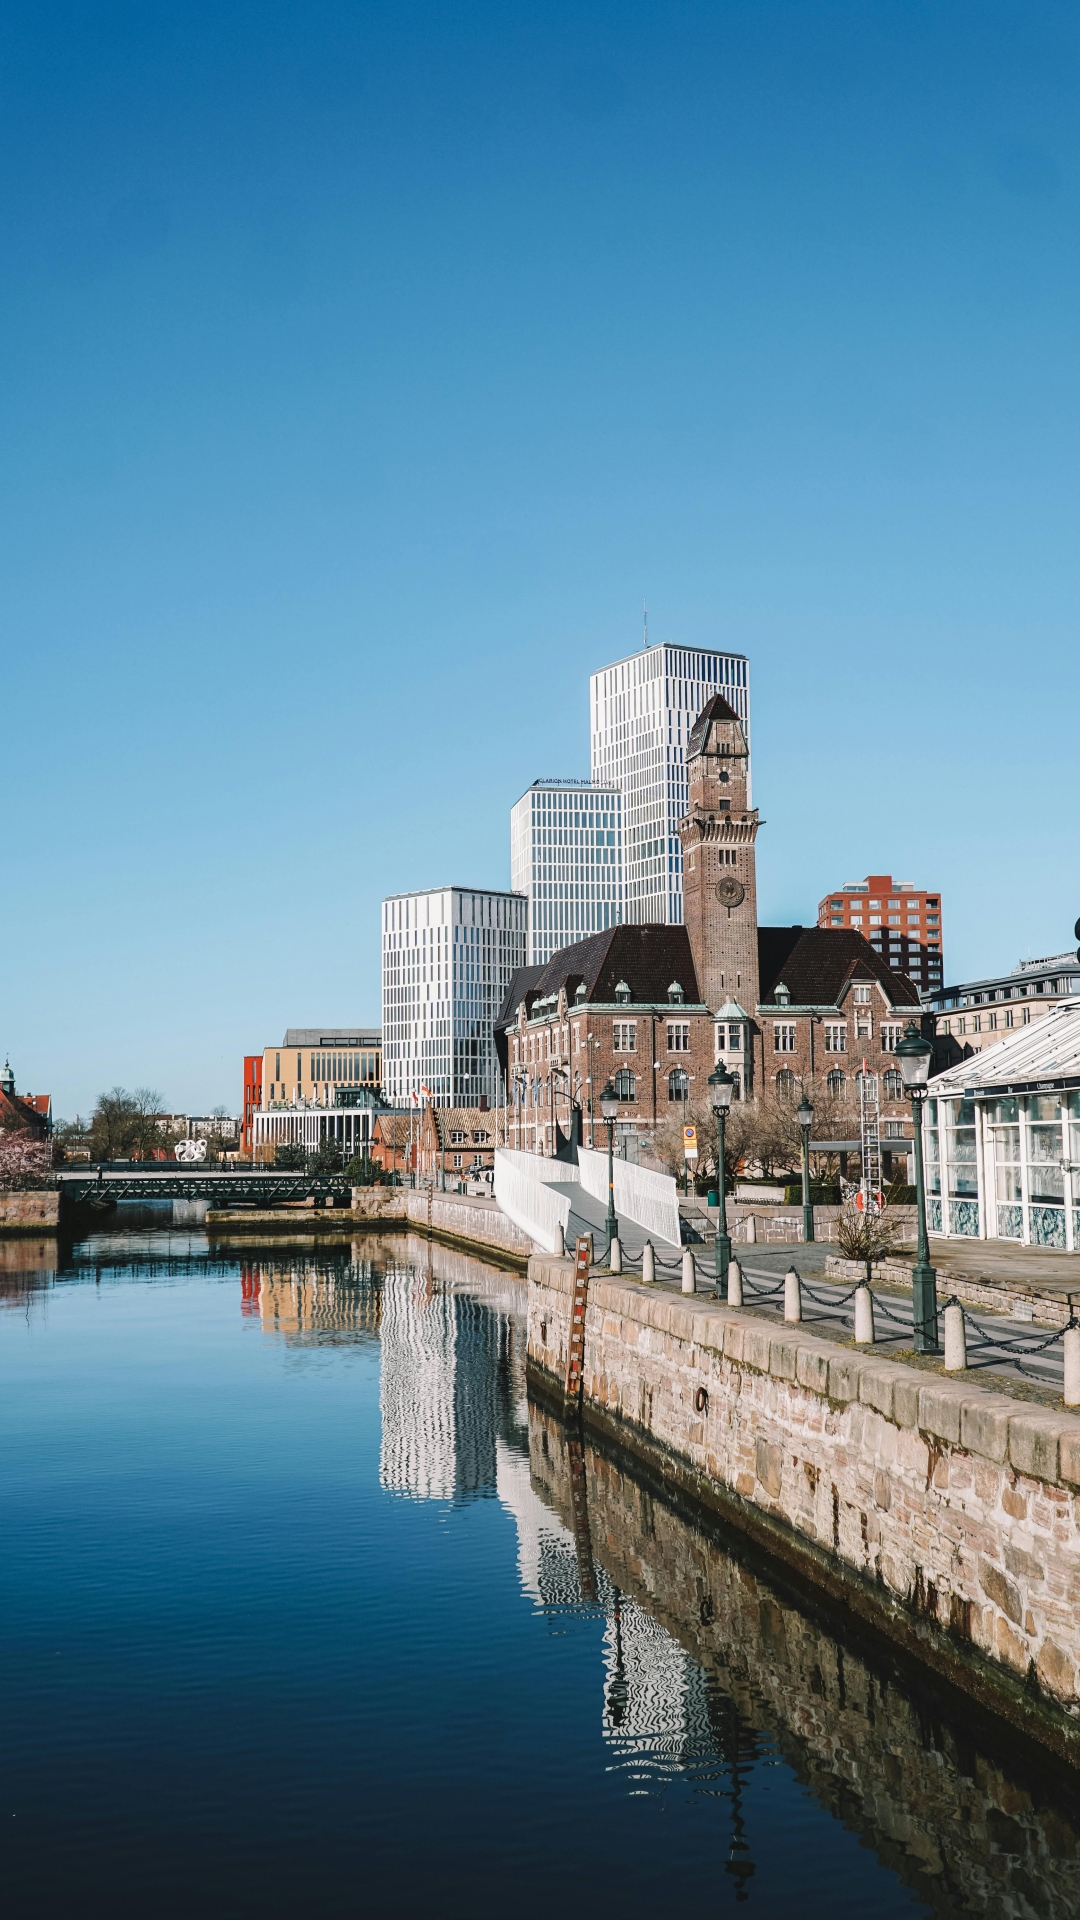 Spoznajte Malmö, švedsko mesto, ki že čez nekaj dni gosti Evrovizijo